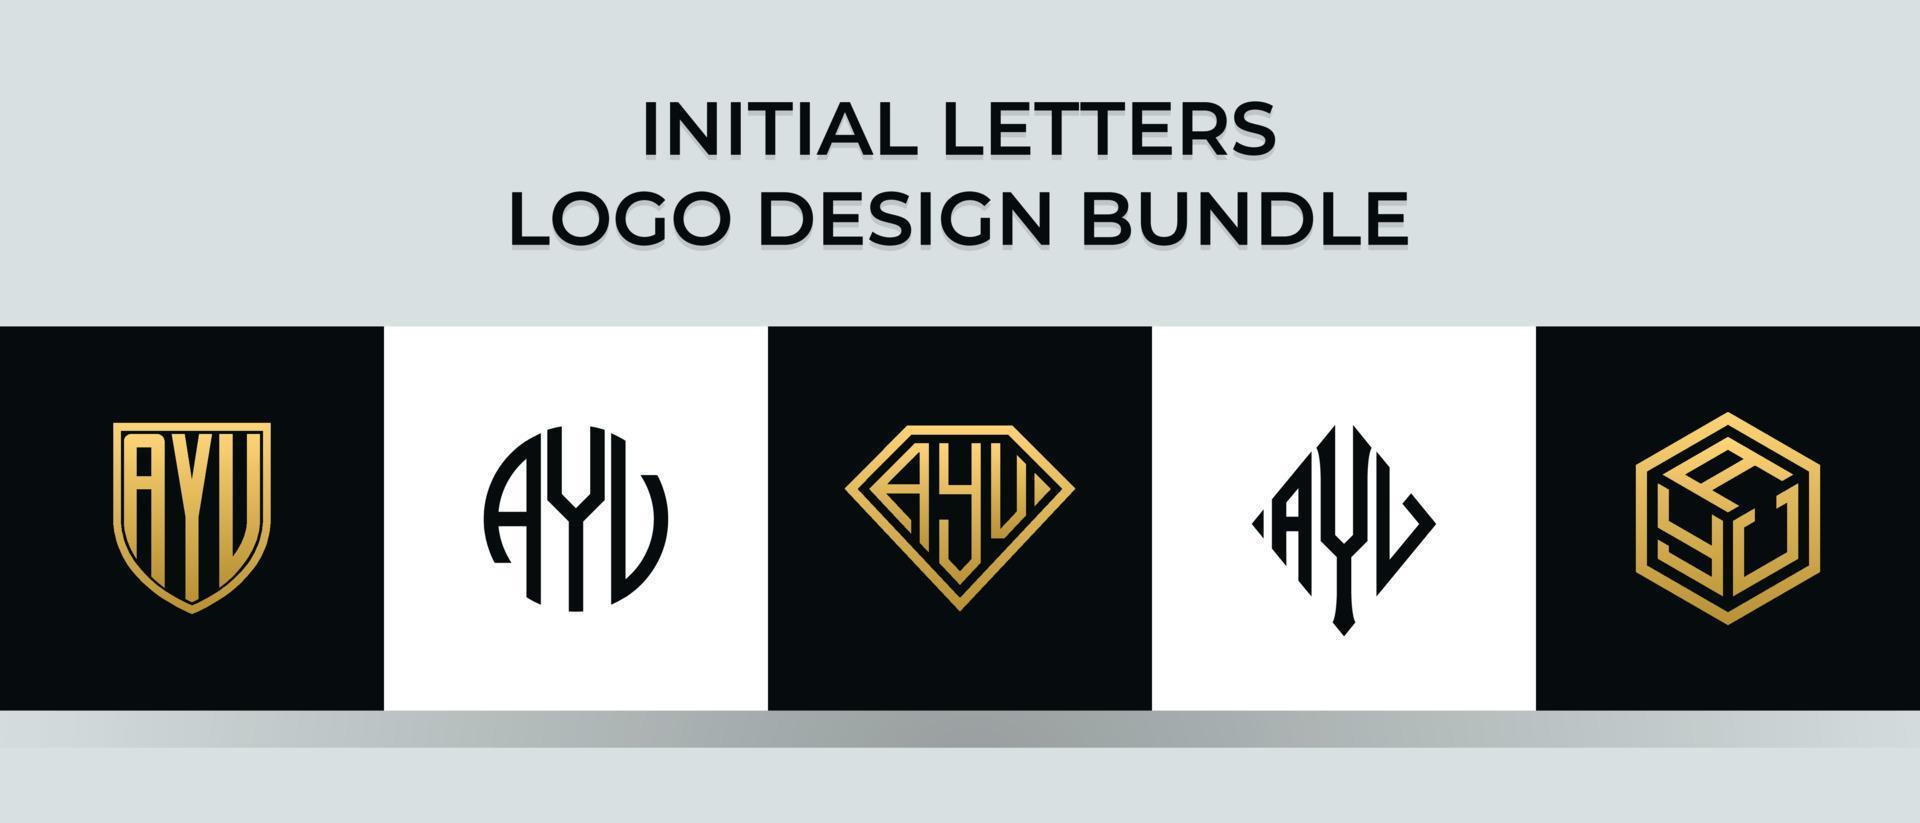 beginletters ayv logo ontwerpen bundel vector